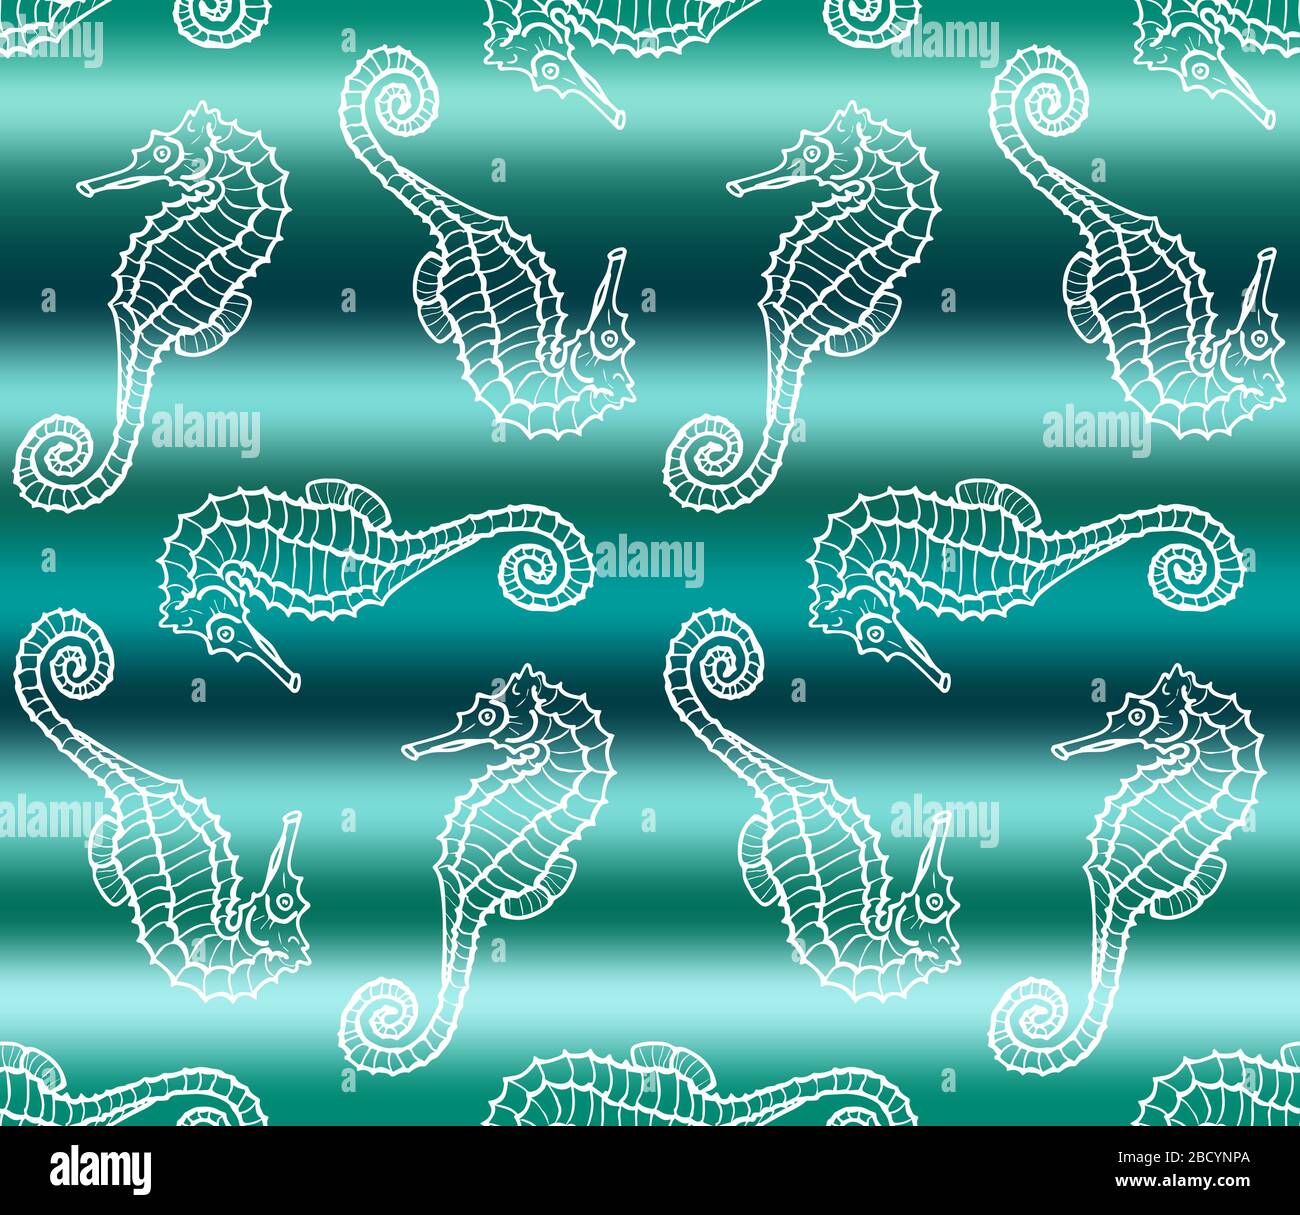 Illustration vectorielle de l'hippocampe blanc sur fond de l'onde de mer à gradient vert. Motif sans couture avec dragon de mer dessiné à la main Illustration de Vecteur